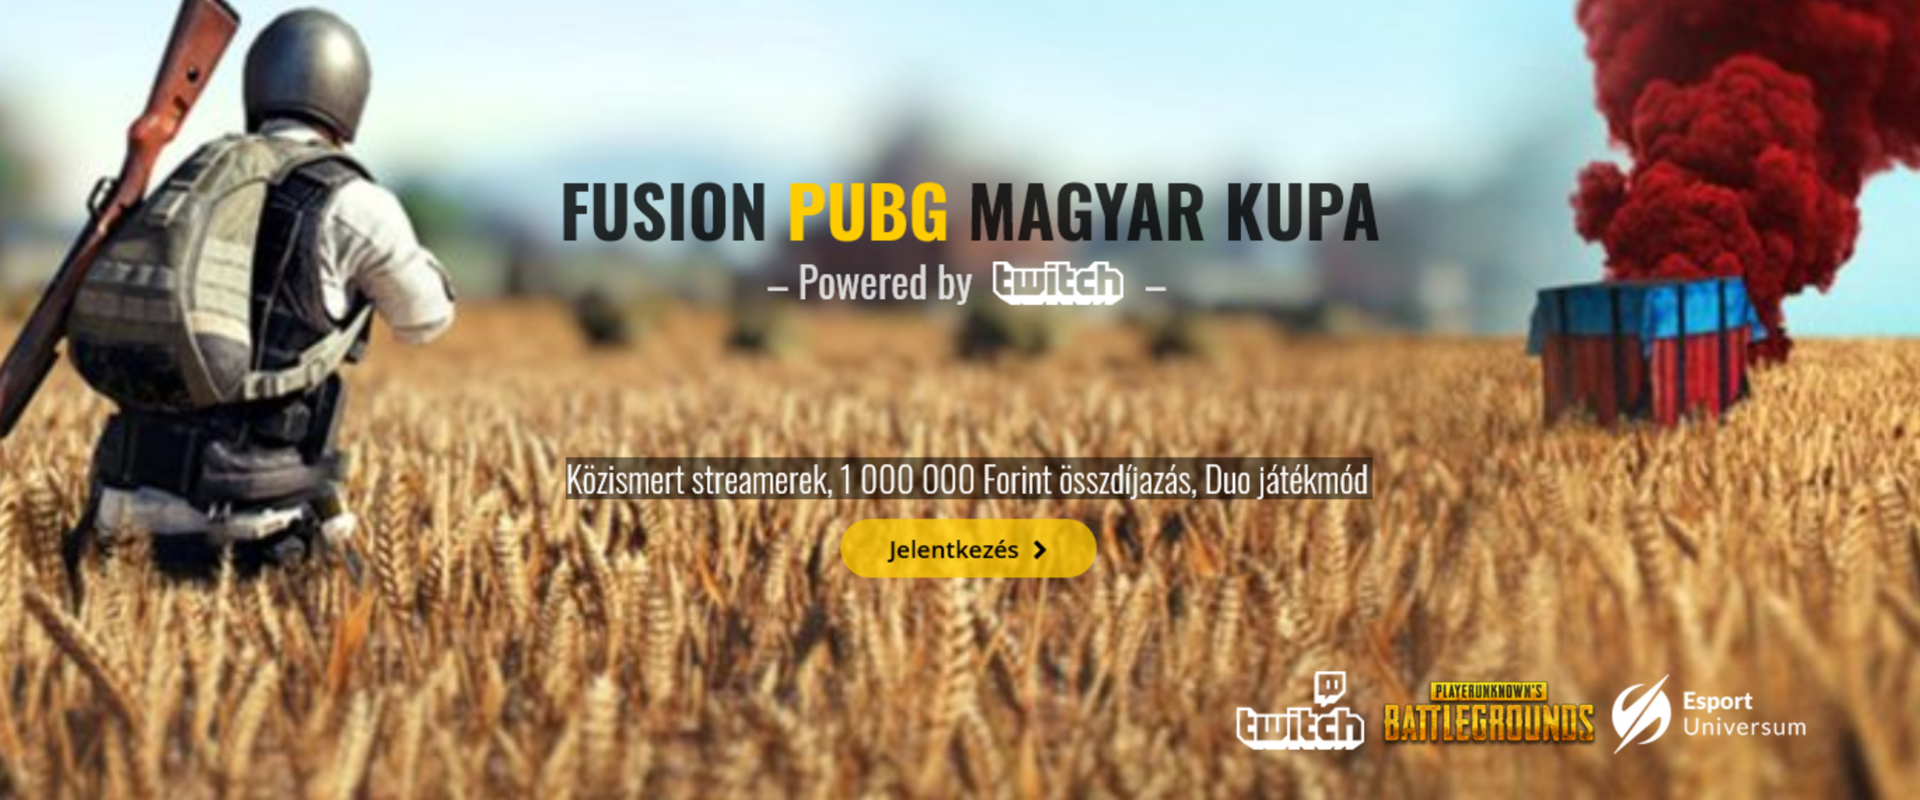 Hatalmas érdeklődés közepette indult el a Fusion első PUBG versenye!